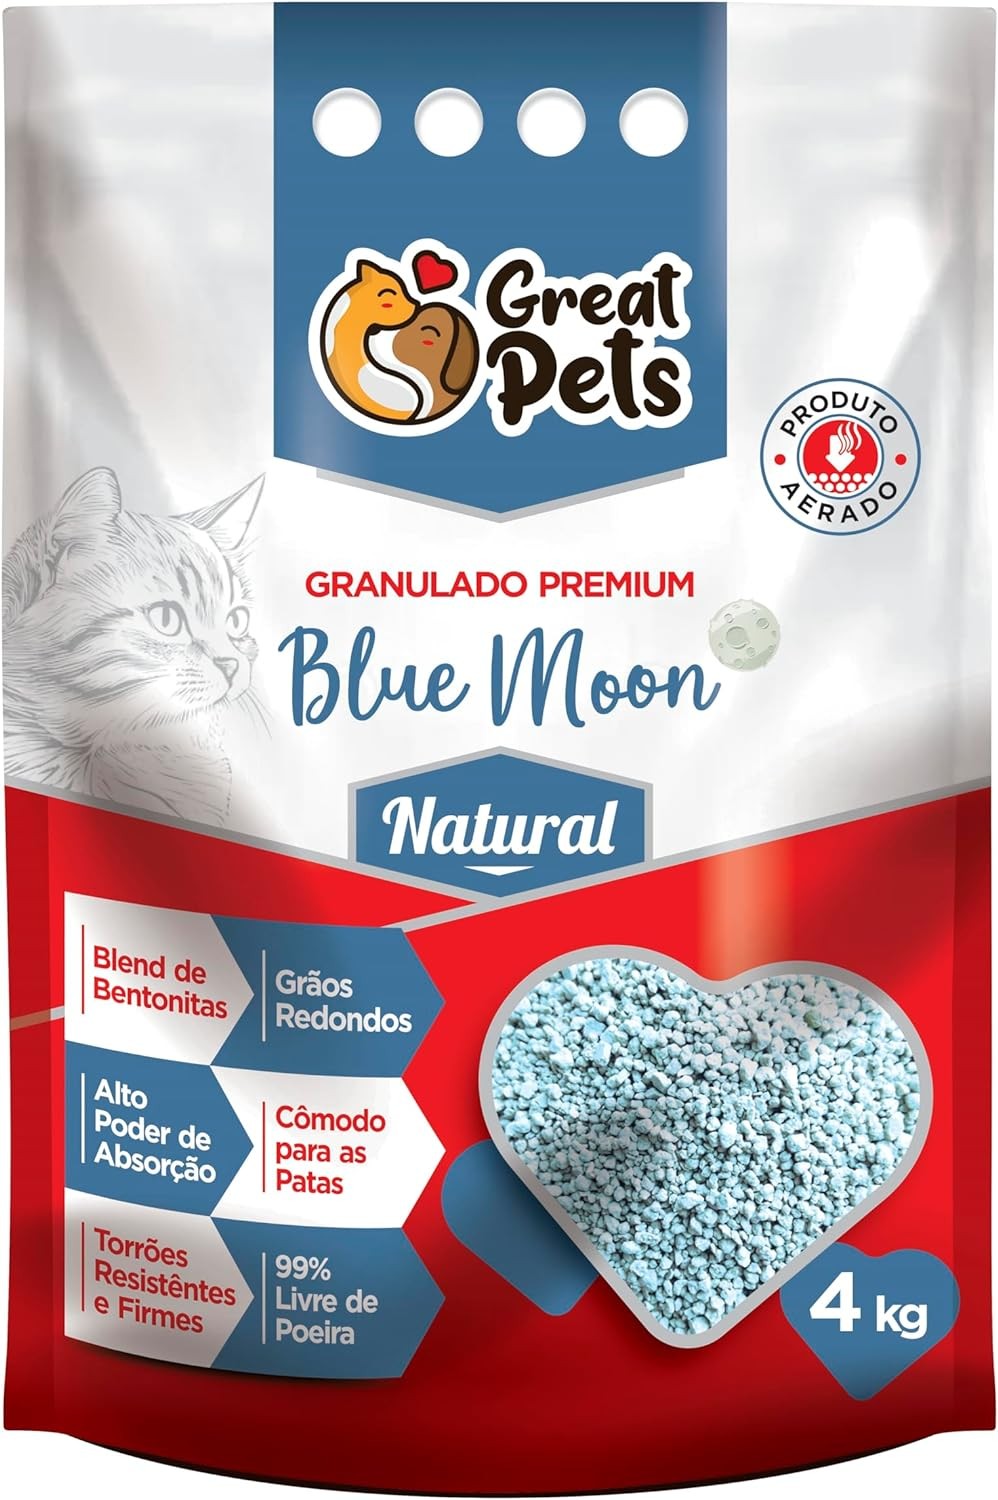 GRANULADO BLUE MOON NATURAL, GREAT PETS (4KG)